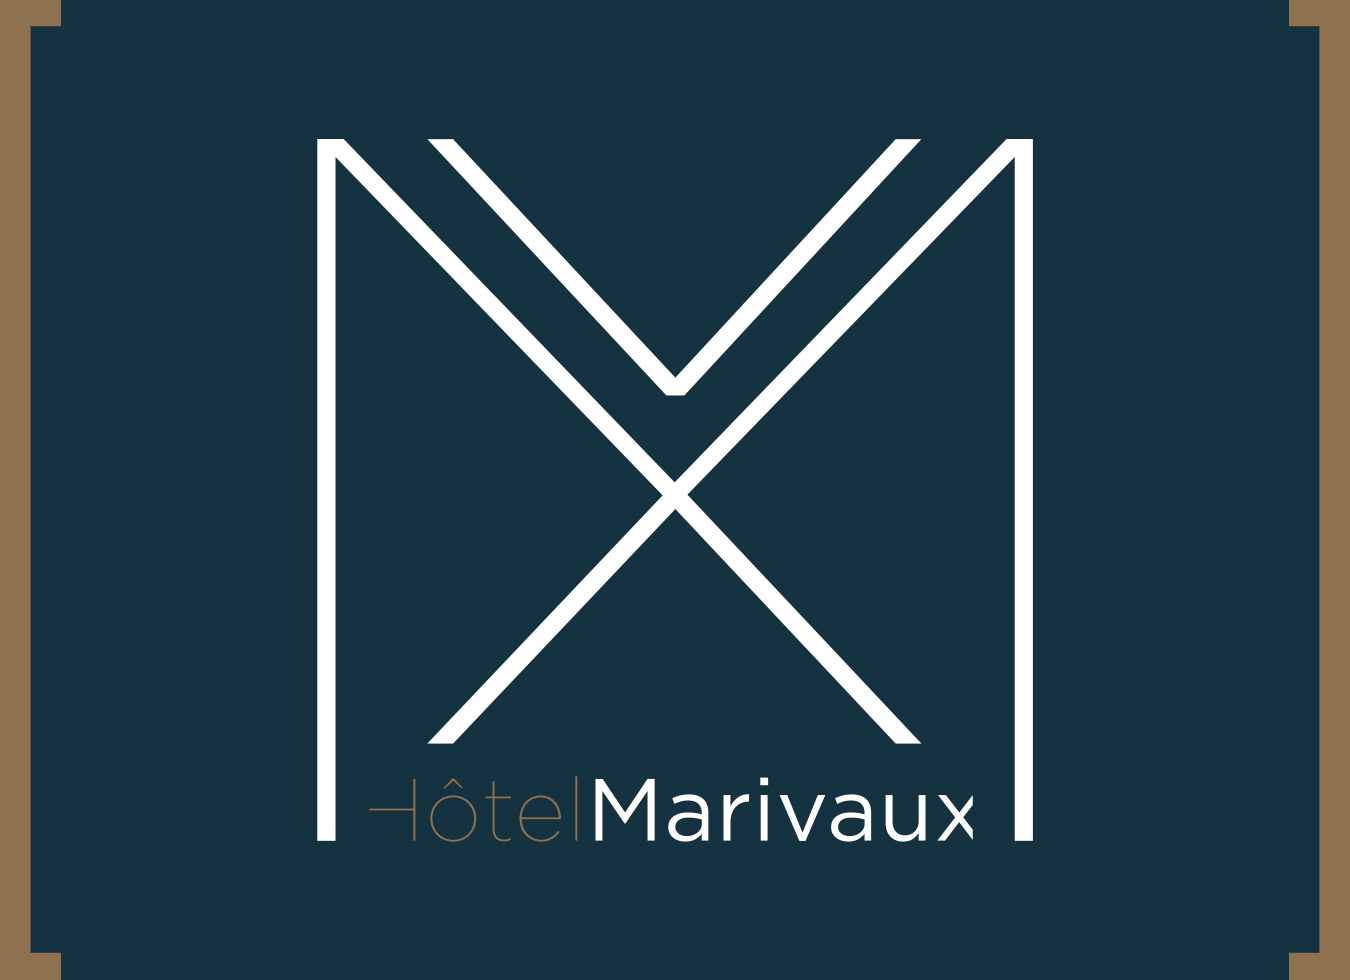 Hôtel Marivaux - Un programme de prestige à Nantes !